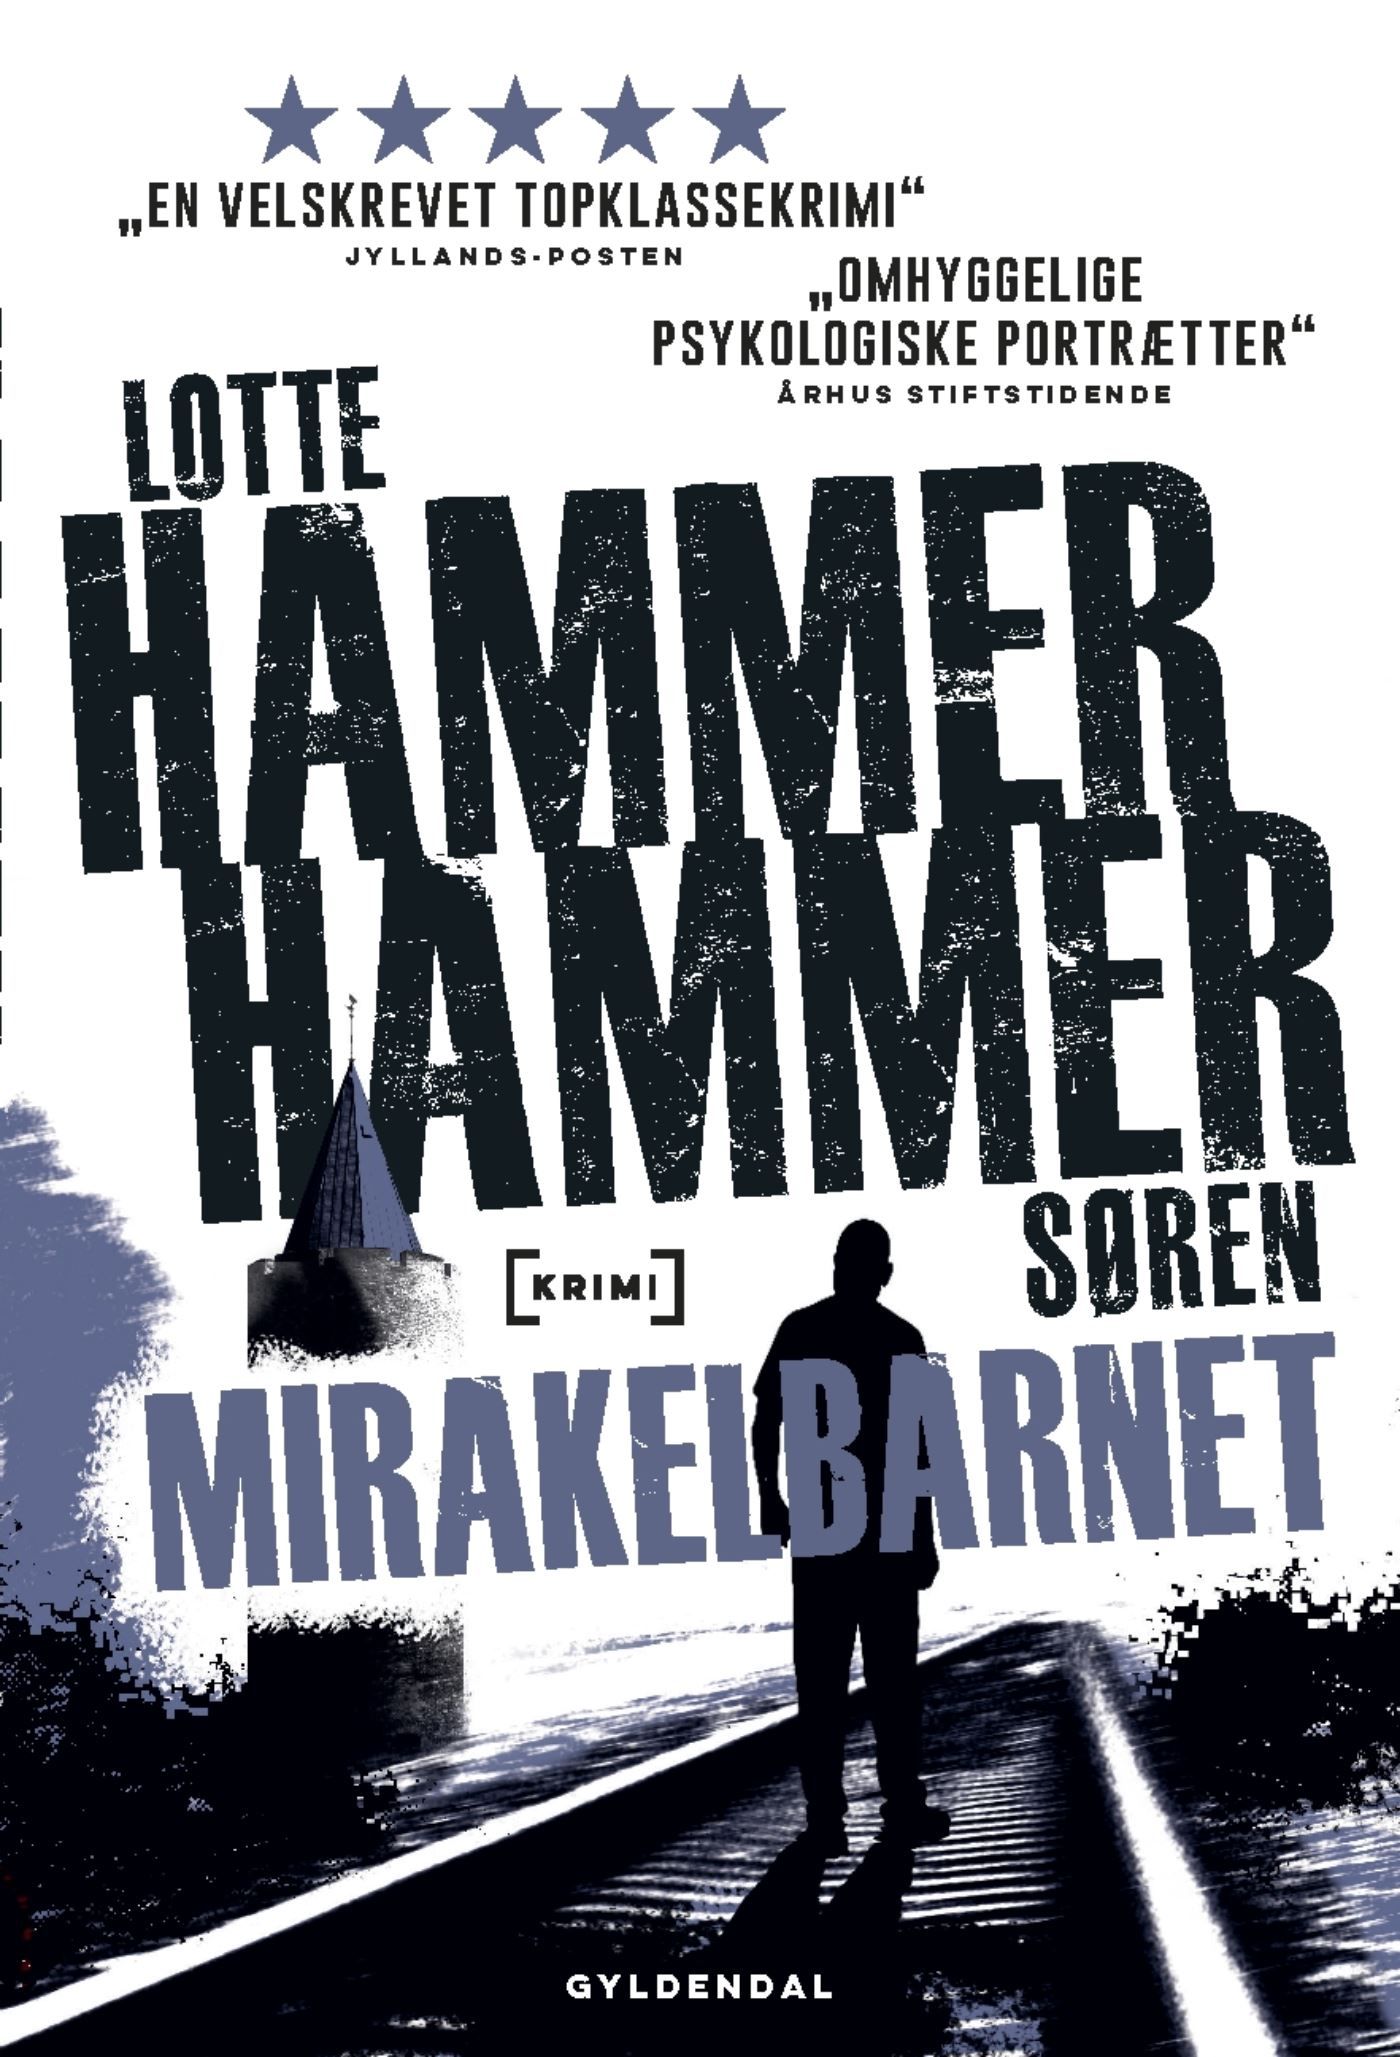 Mirakelbarnet, lydbog af Lotte og Søren Hammer